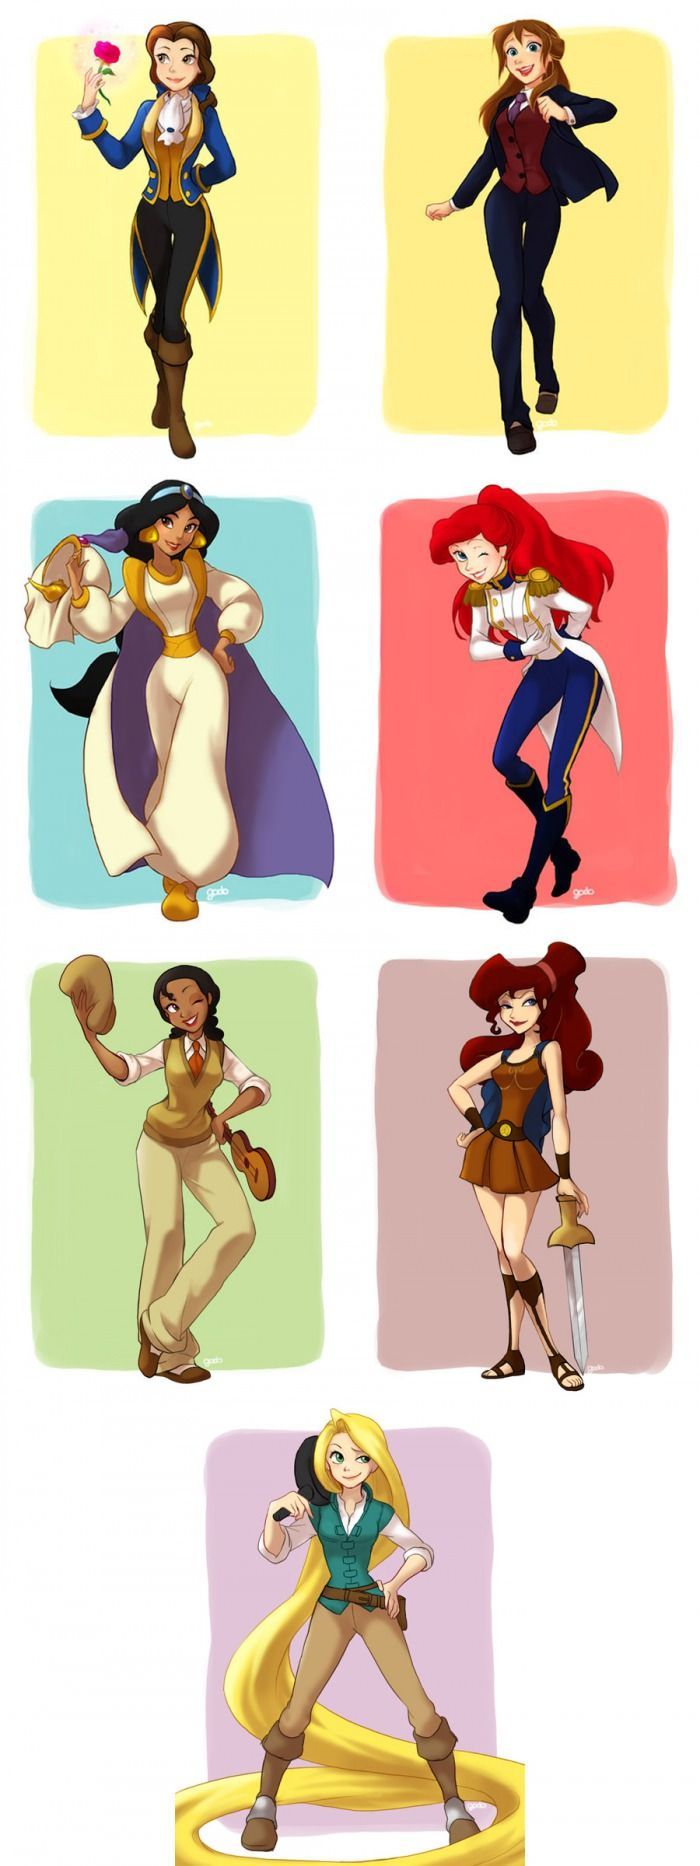 Disney princesses borrow their princes outfits. Cute!